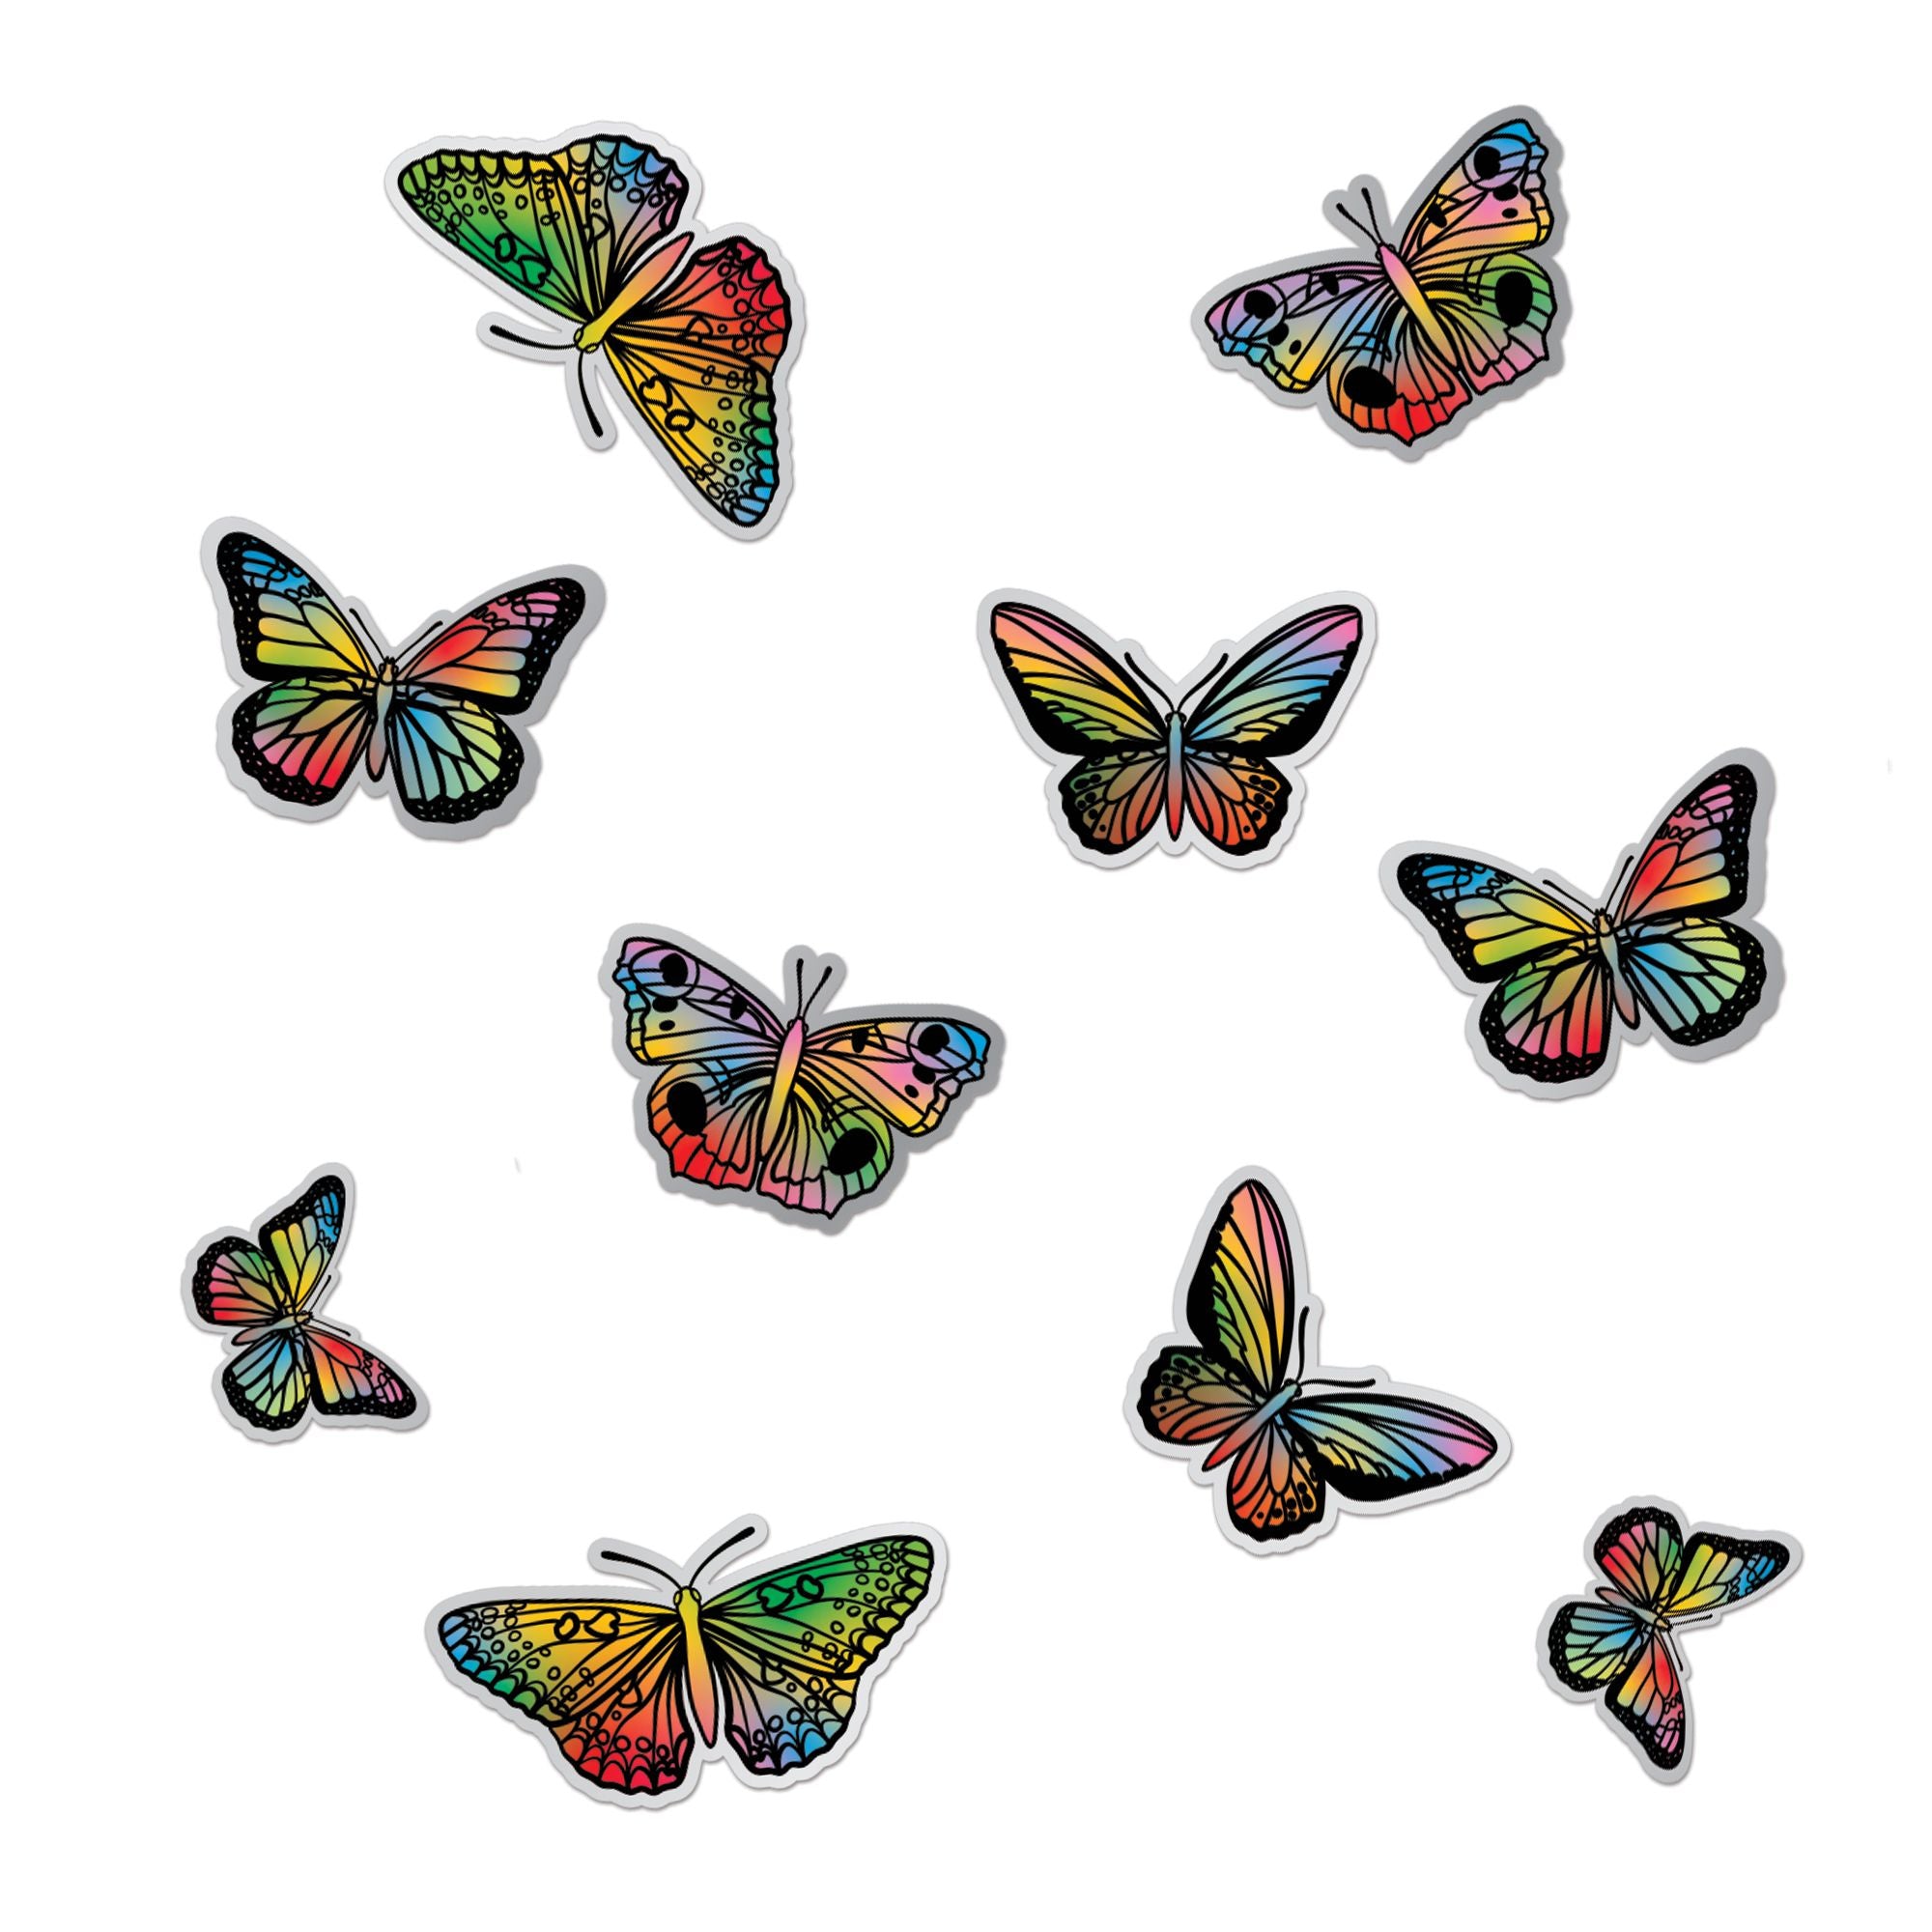 Multicolor Monarchs Sticker Confetti